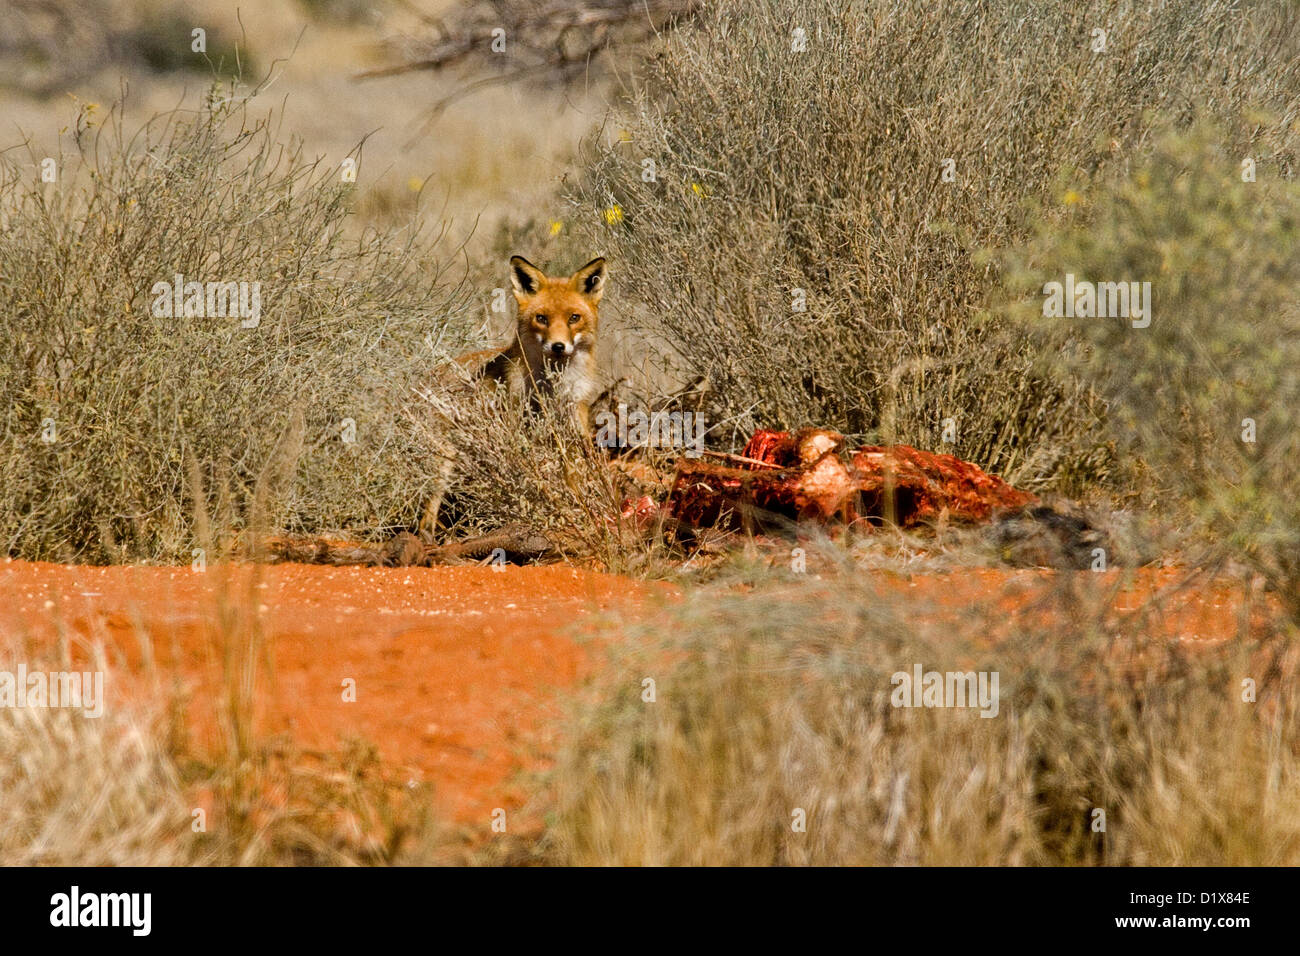 Fuchs mit Road Kill Kadaver - Toten Känguru - zwischen hohen Gräsern im australischen outback Stockfoto